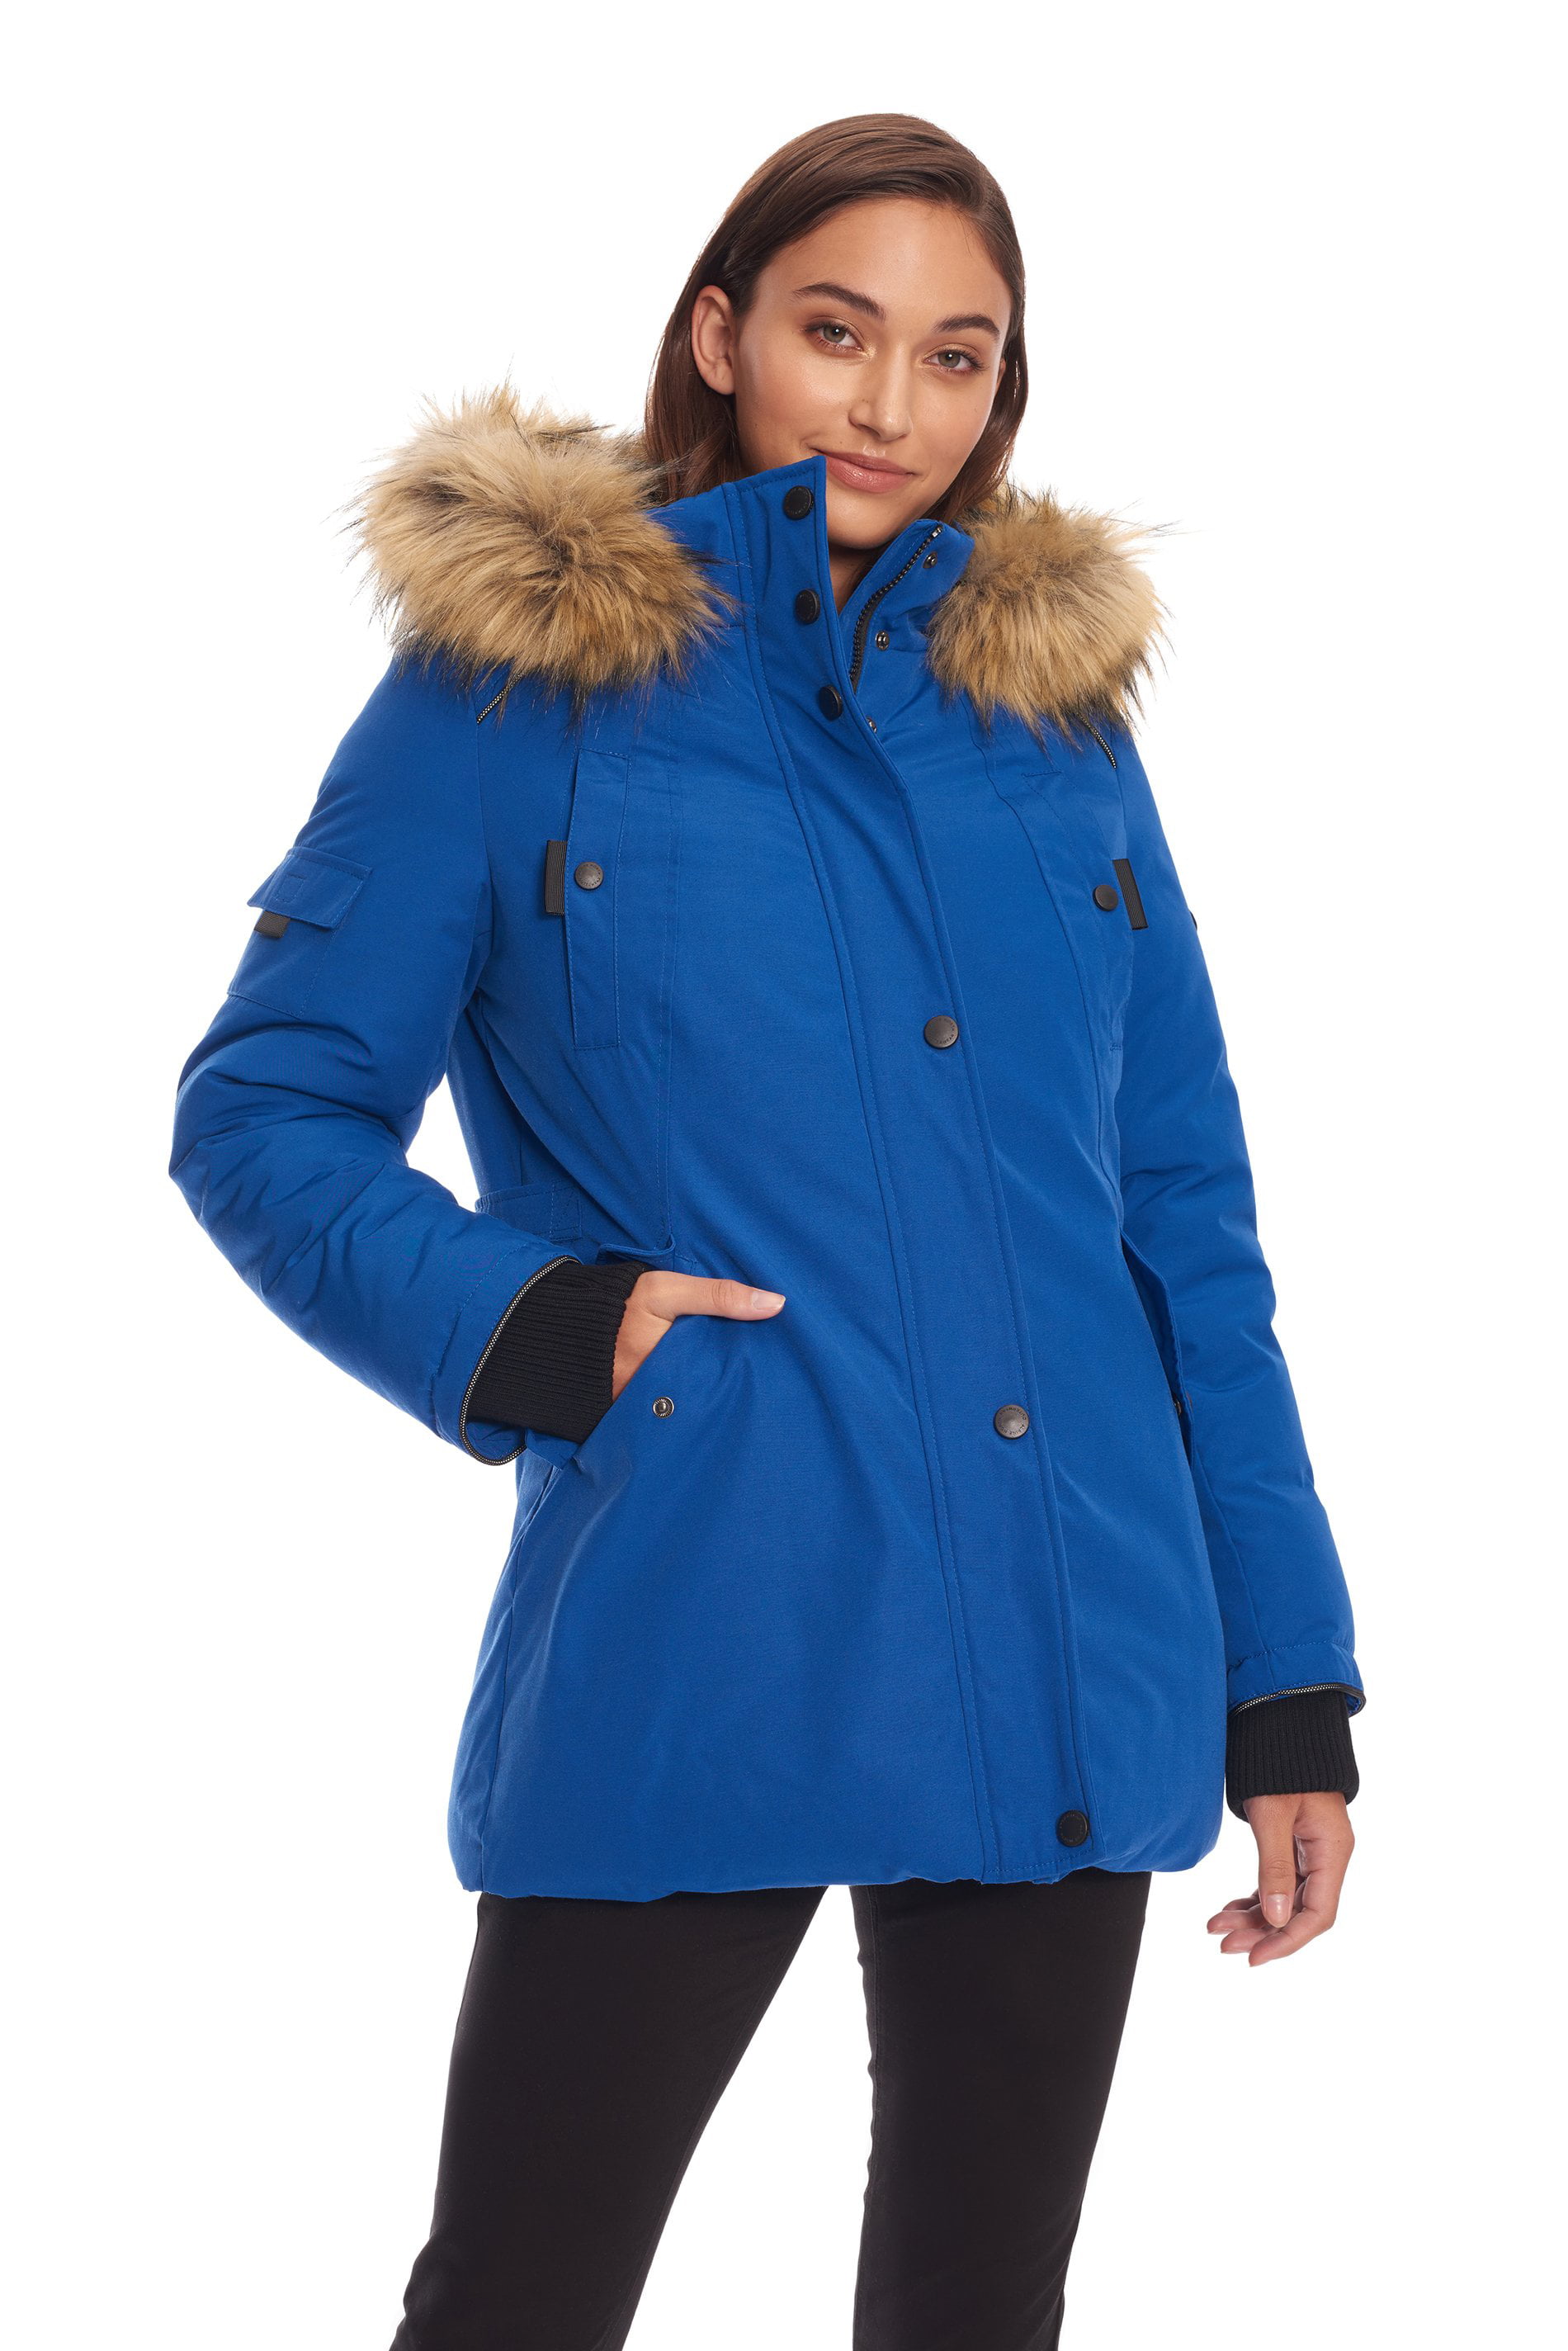 Alpine Swiss Duffy Women's Wool Coat Fur Trim Hooded Parka Jacket